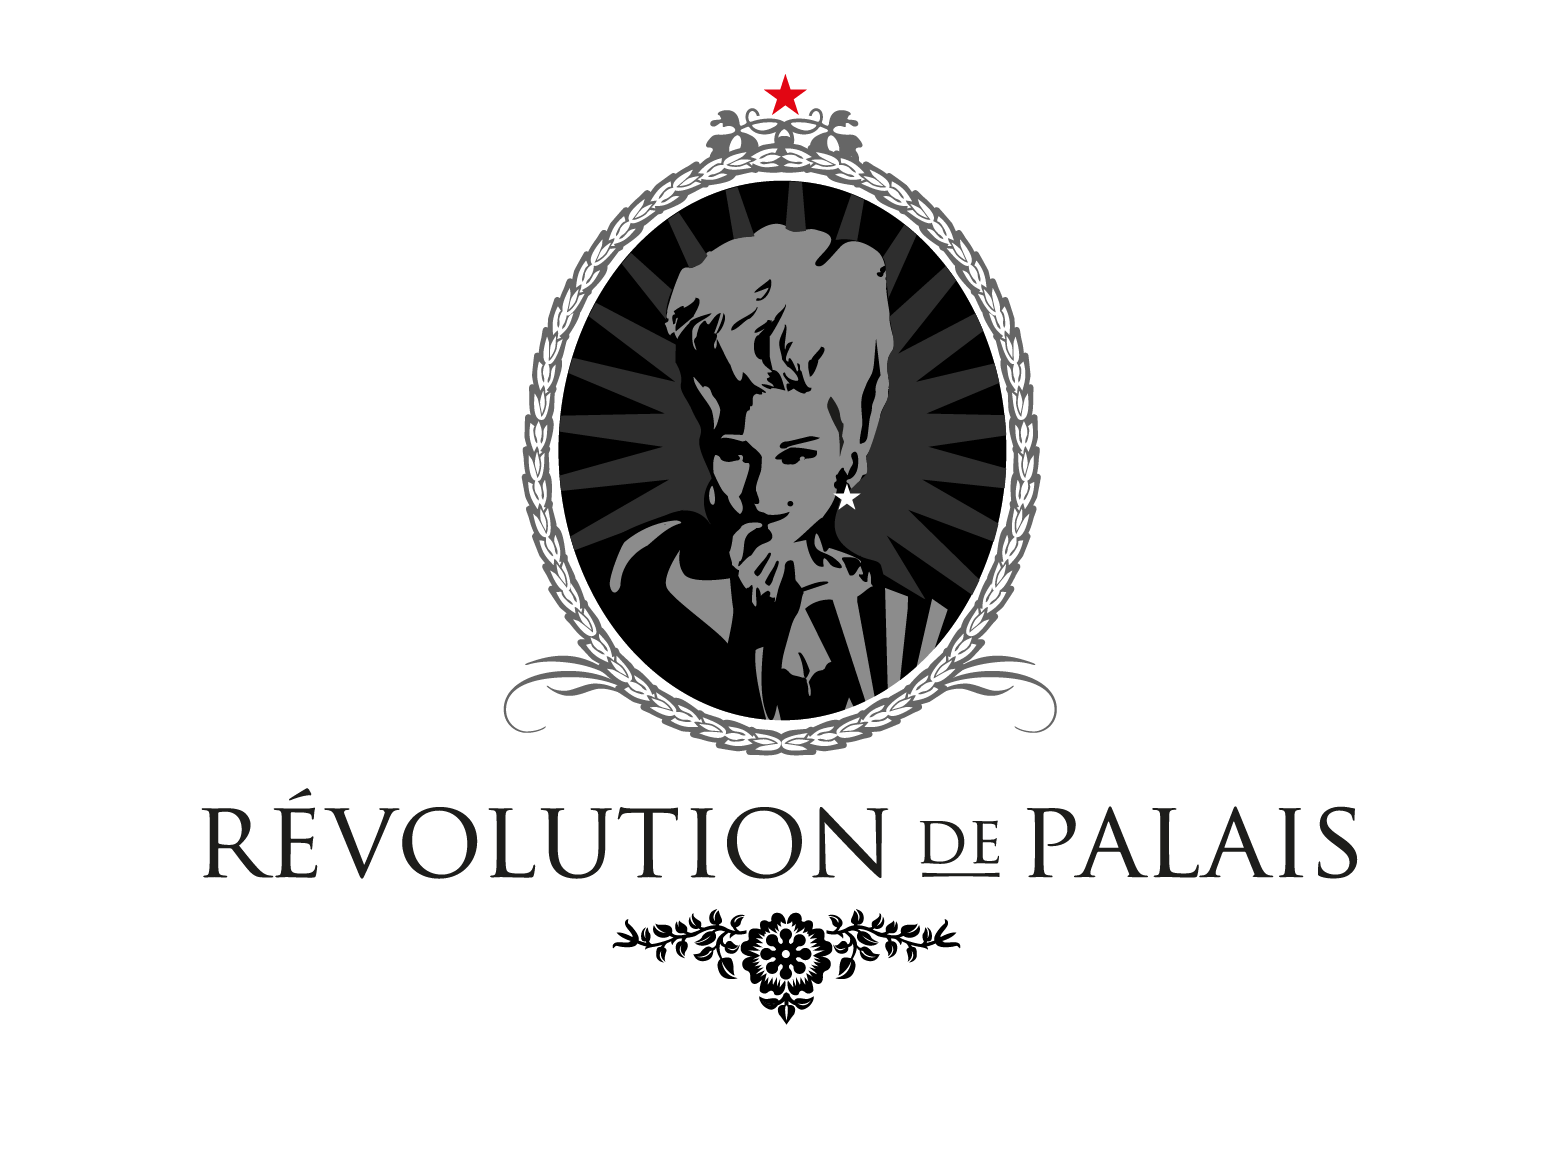 Logo Révolution de Palais